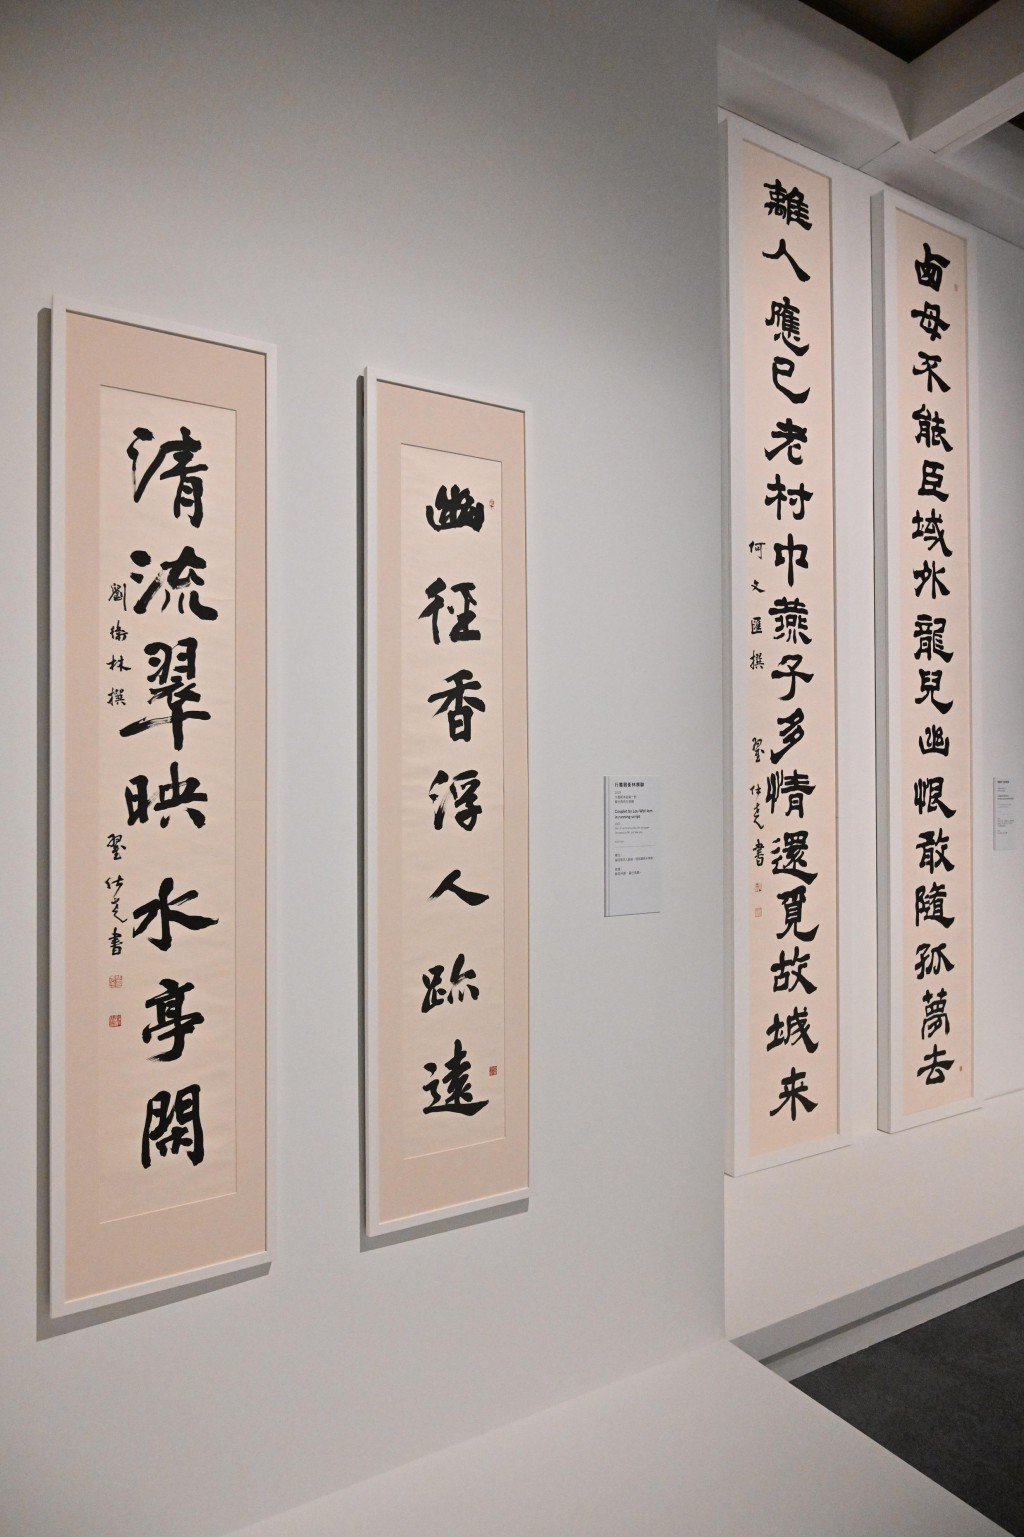 翟仕尧创作、悬挂于九龙寨城公园内两幅对联的原作《行书刘卫林撰联》及《隶书何文汇撰联》